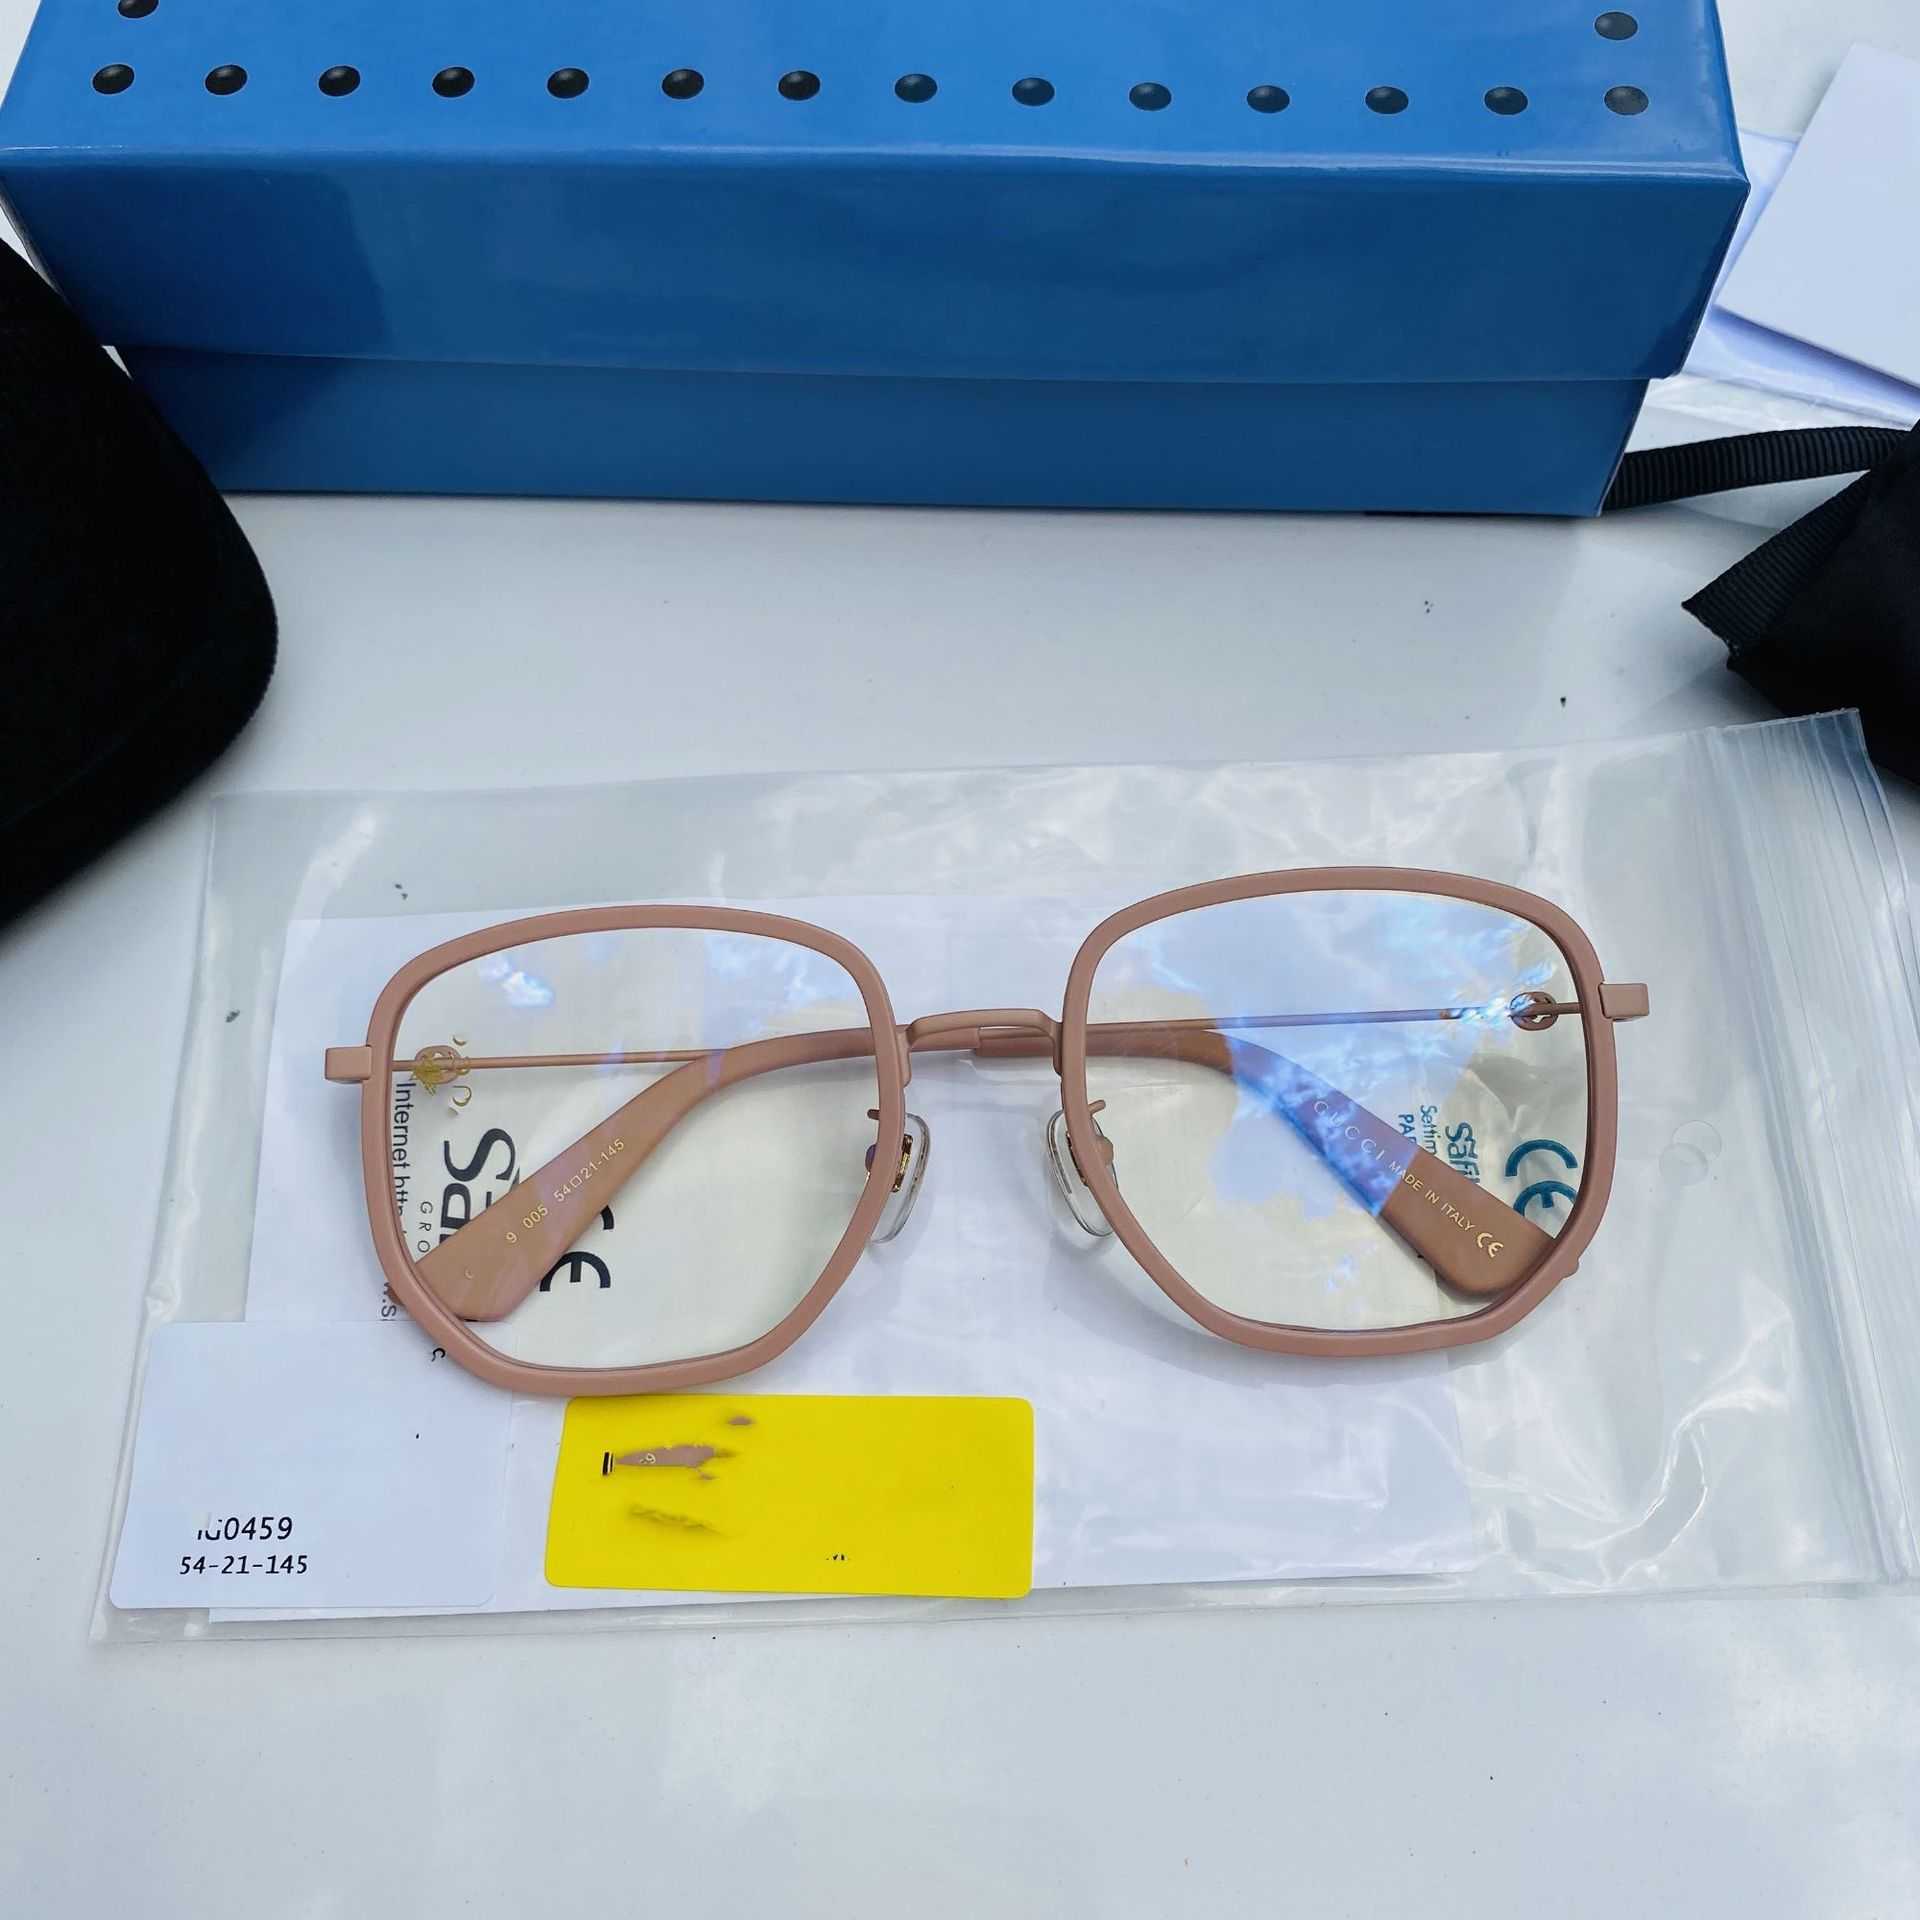 2023 Novos óculos de sol de designer de luxo, a nova lente plana gg0459 tem uma armação irregular e é popular. O rosto simples pode ser combinado com uma abelhinha míope